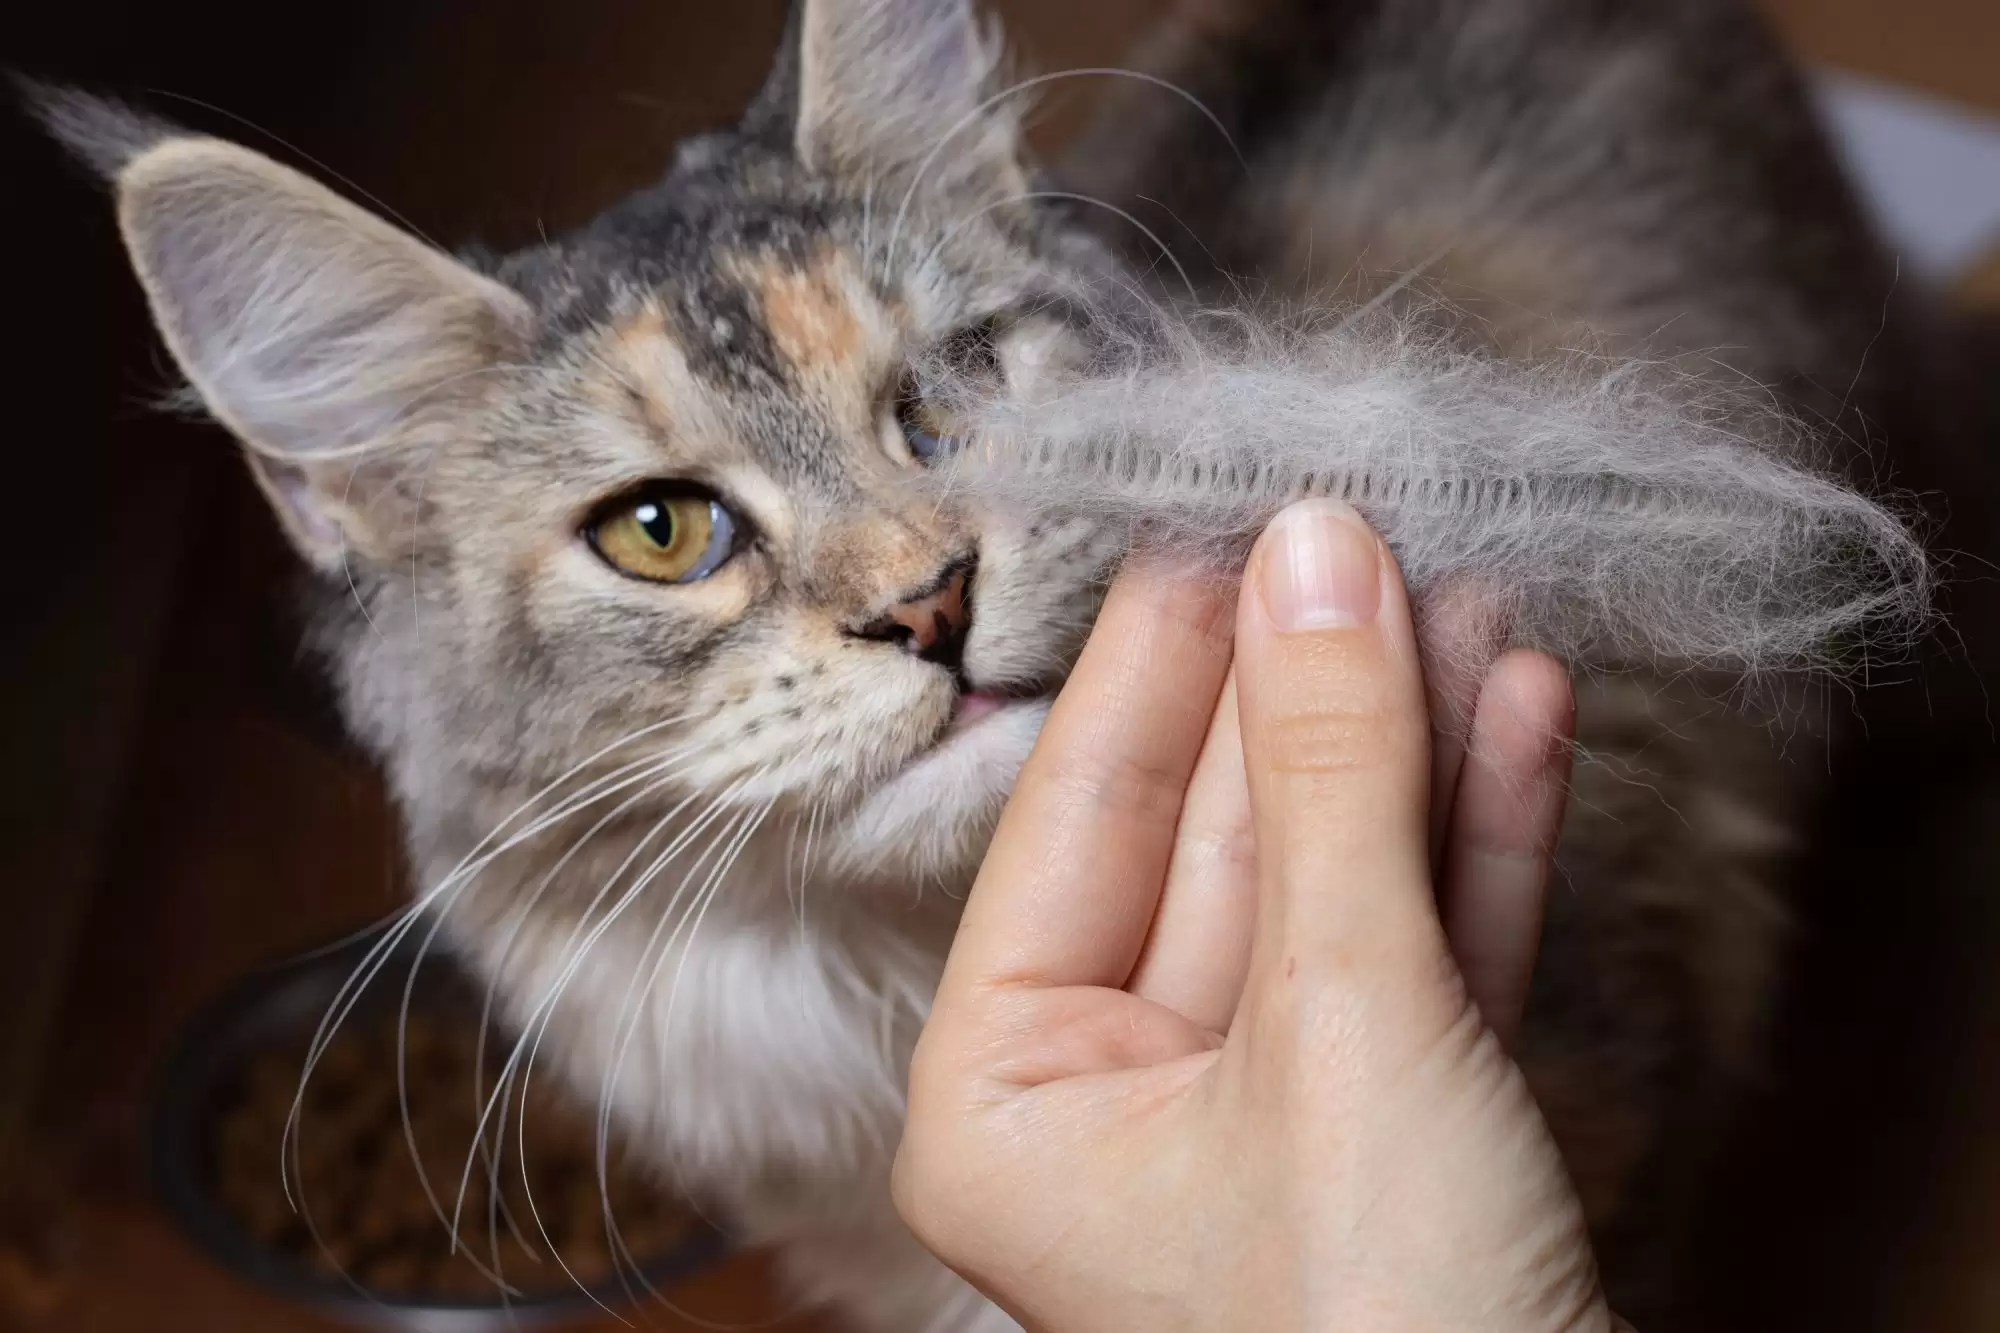 Mèo thường xuyên rụng lông cũng là dấu hiệu nhận biết đang bị ký sinh bởi ve rận